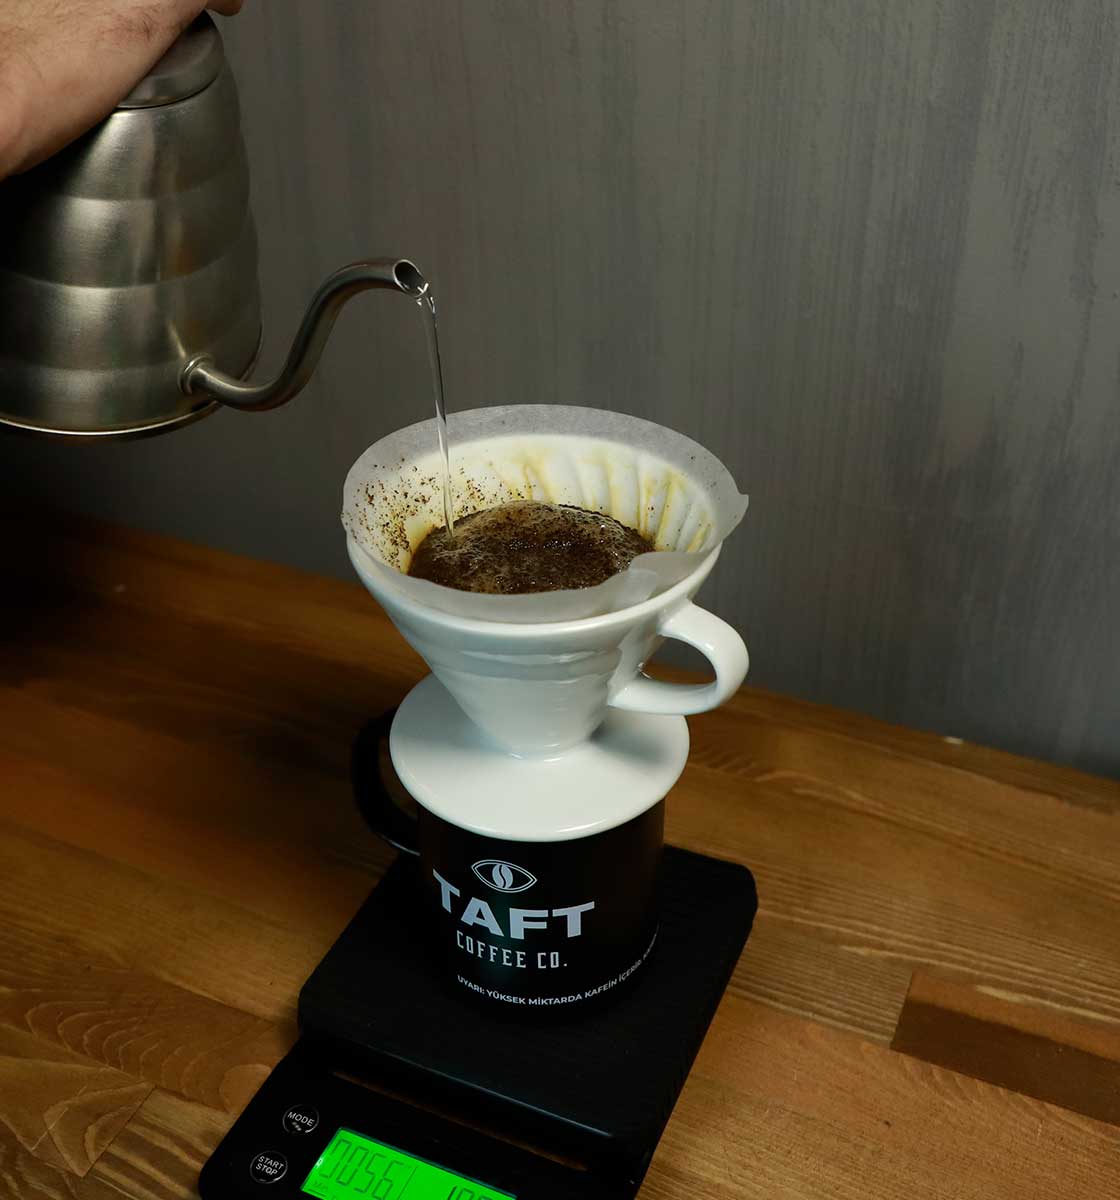 Ahşap tezgah üzerindeki hassas tartınız üzerinde yer alan TAFT Kupa içerisinde v60 demleme ekipmanıyla filtre kahve demlenerek aktarılıyor.